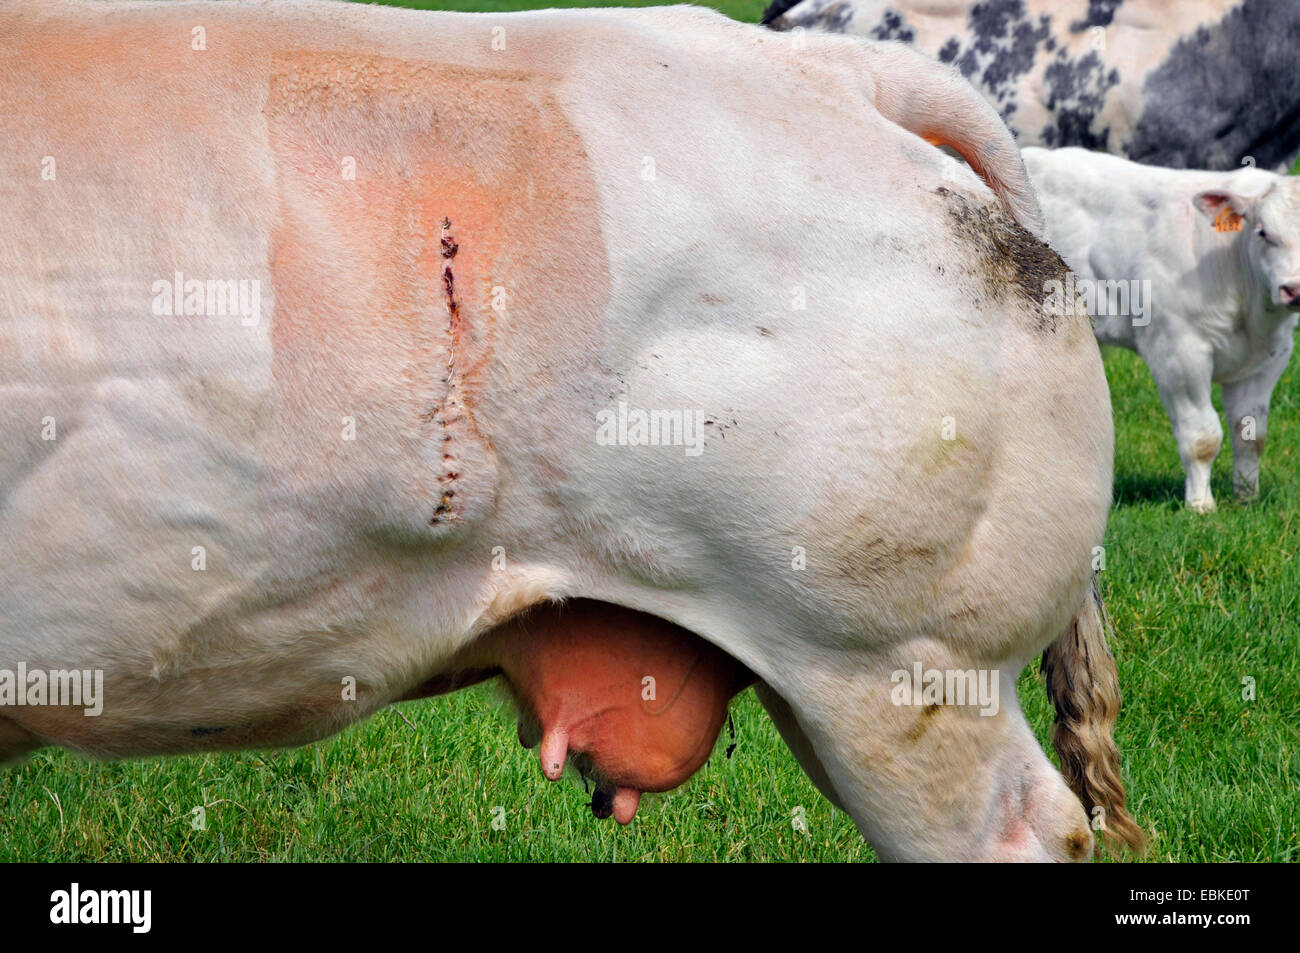 Blu belga (Bos primigenius f. taurus), cesareo sutura al fianco di una mucca, Belgio, Fiandre Occidentali Foto Stock